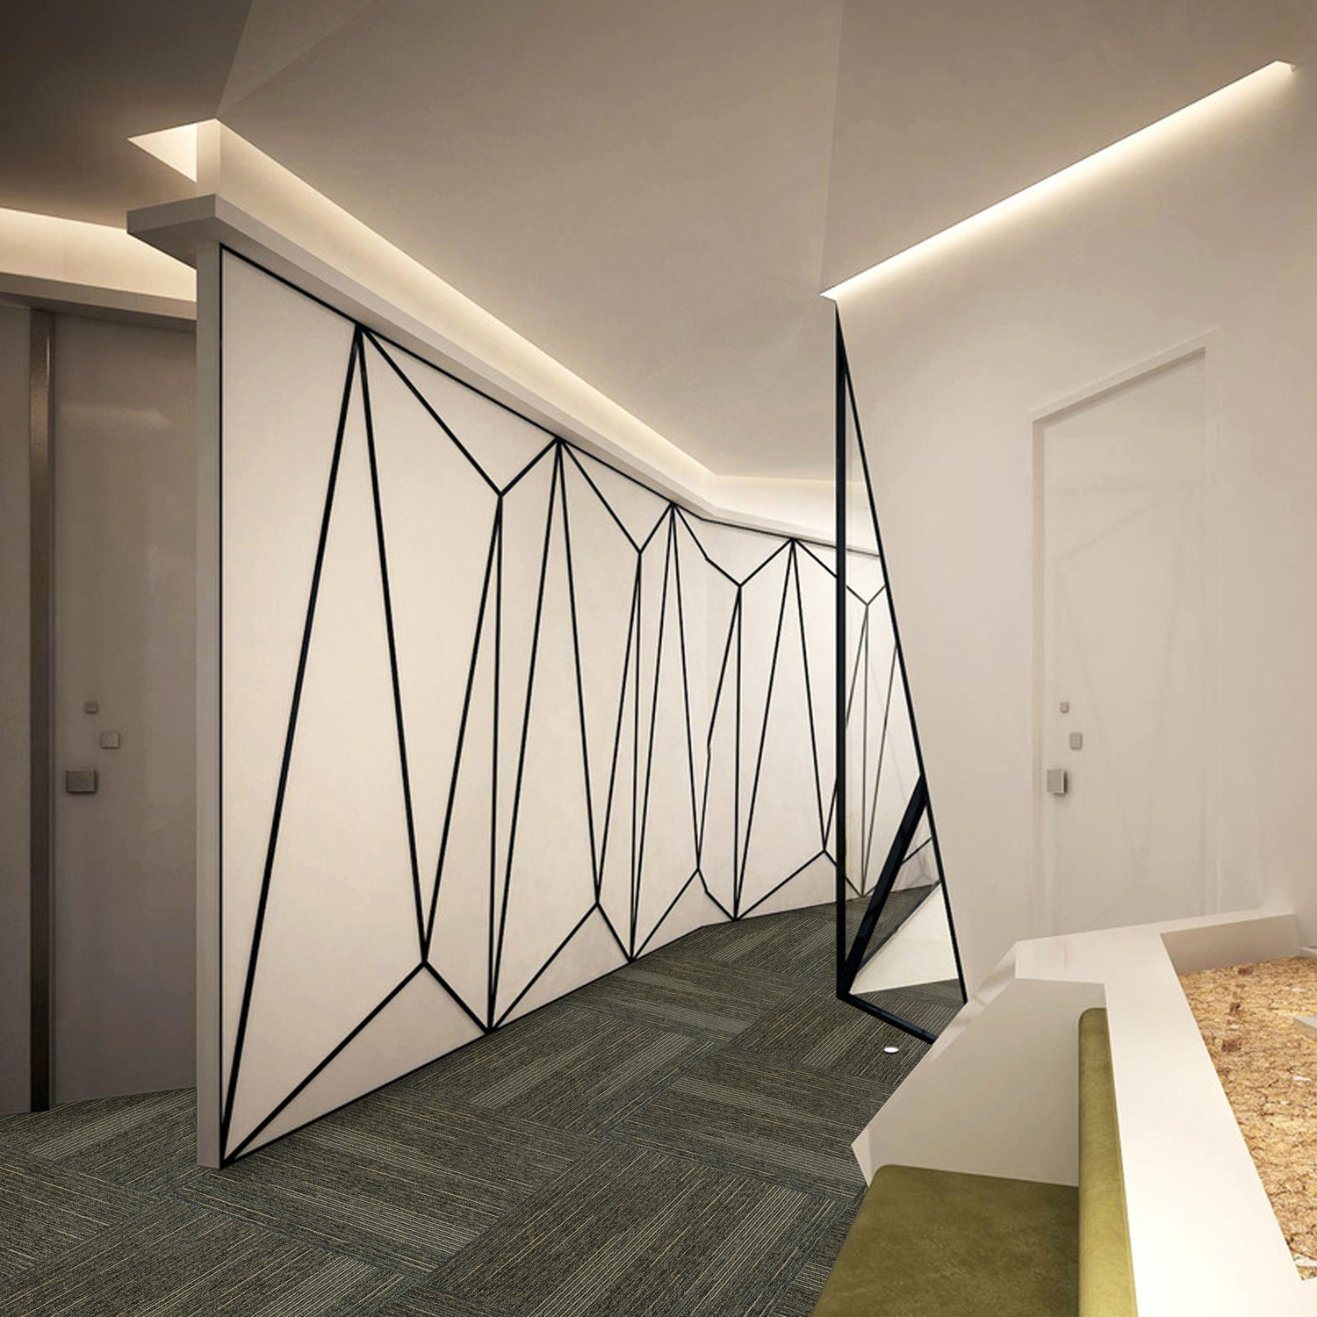 Zurich -1/12 Gauge Office/Hotel/Home Carpet Loop Pile Jacquard Carpet Tile with Eco-Bitumen Backing